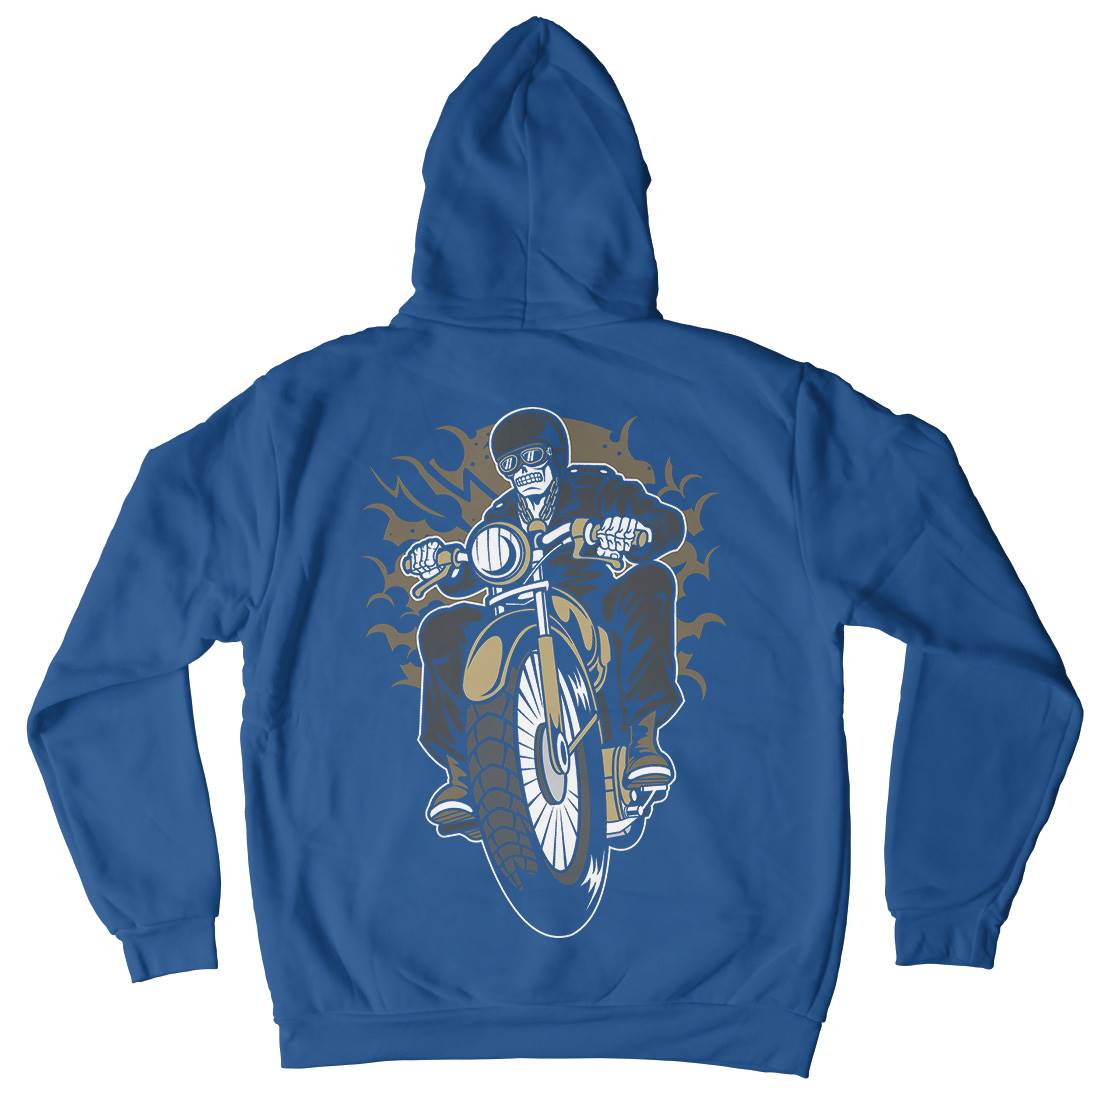 Skull Biker Club Mens Hoodie With Pocket Motorcycles C443